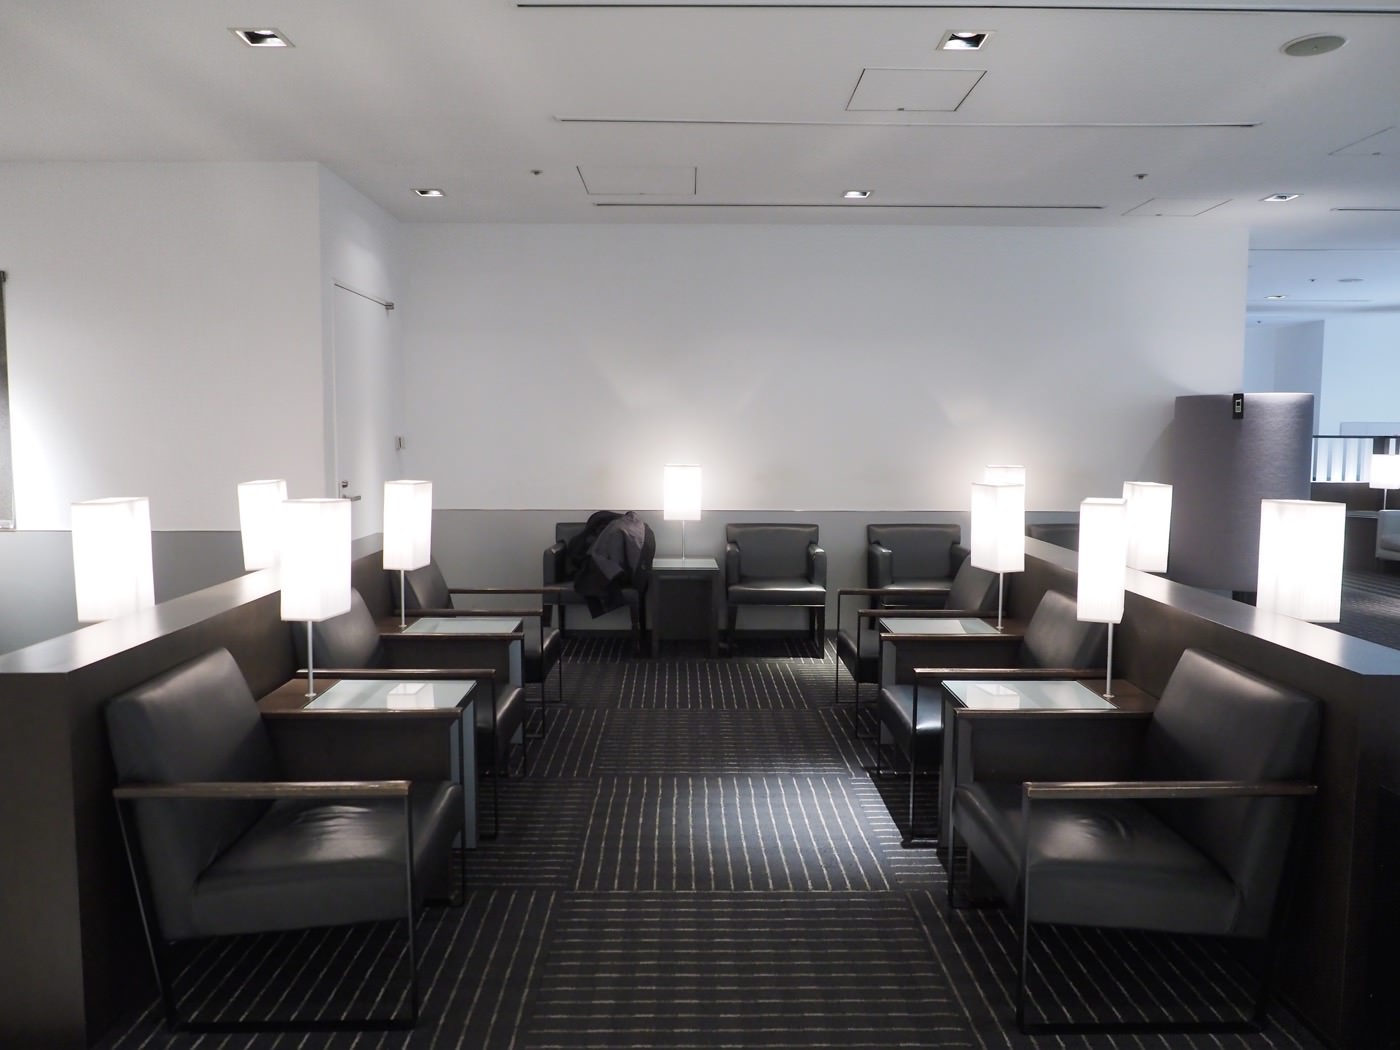 貴賓室 日本千葉 東京成田機場 ANA Lounge 全日空商務貴賓室 成田機場一航廈南翼二樓 - 一口冒險 Bitesized Adventure